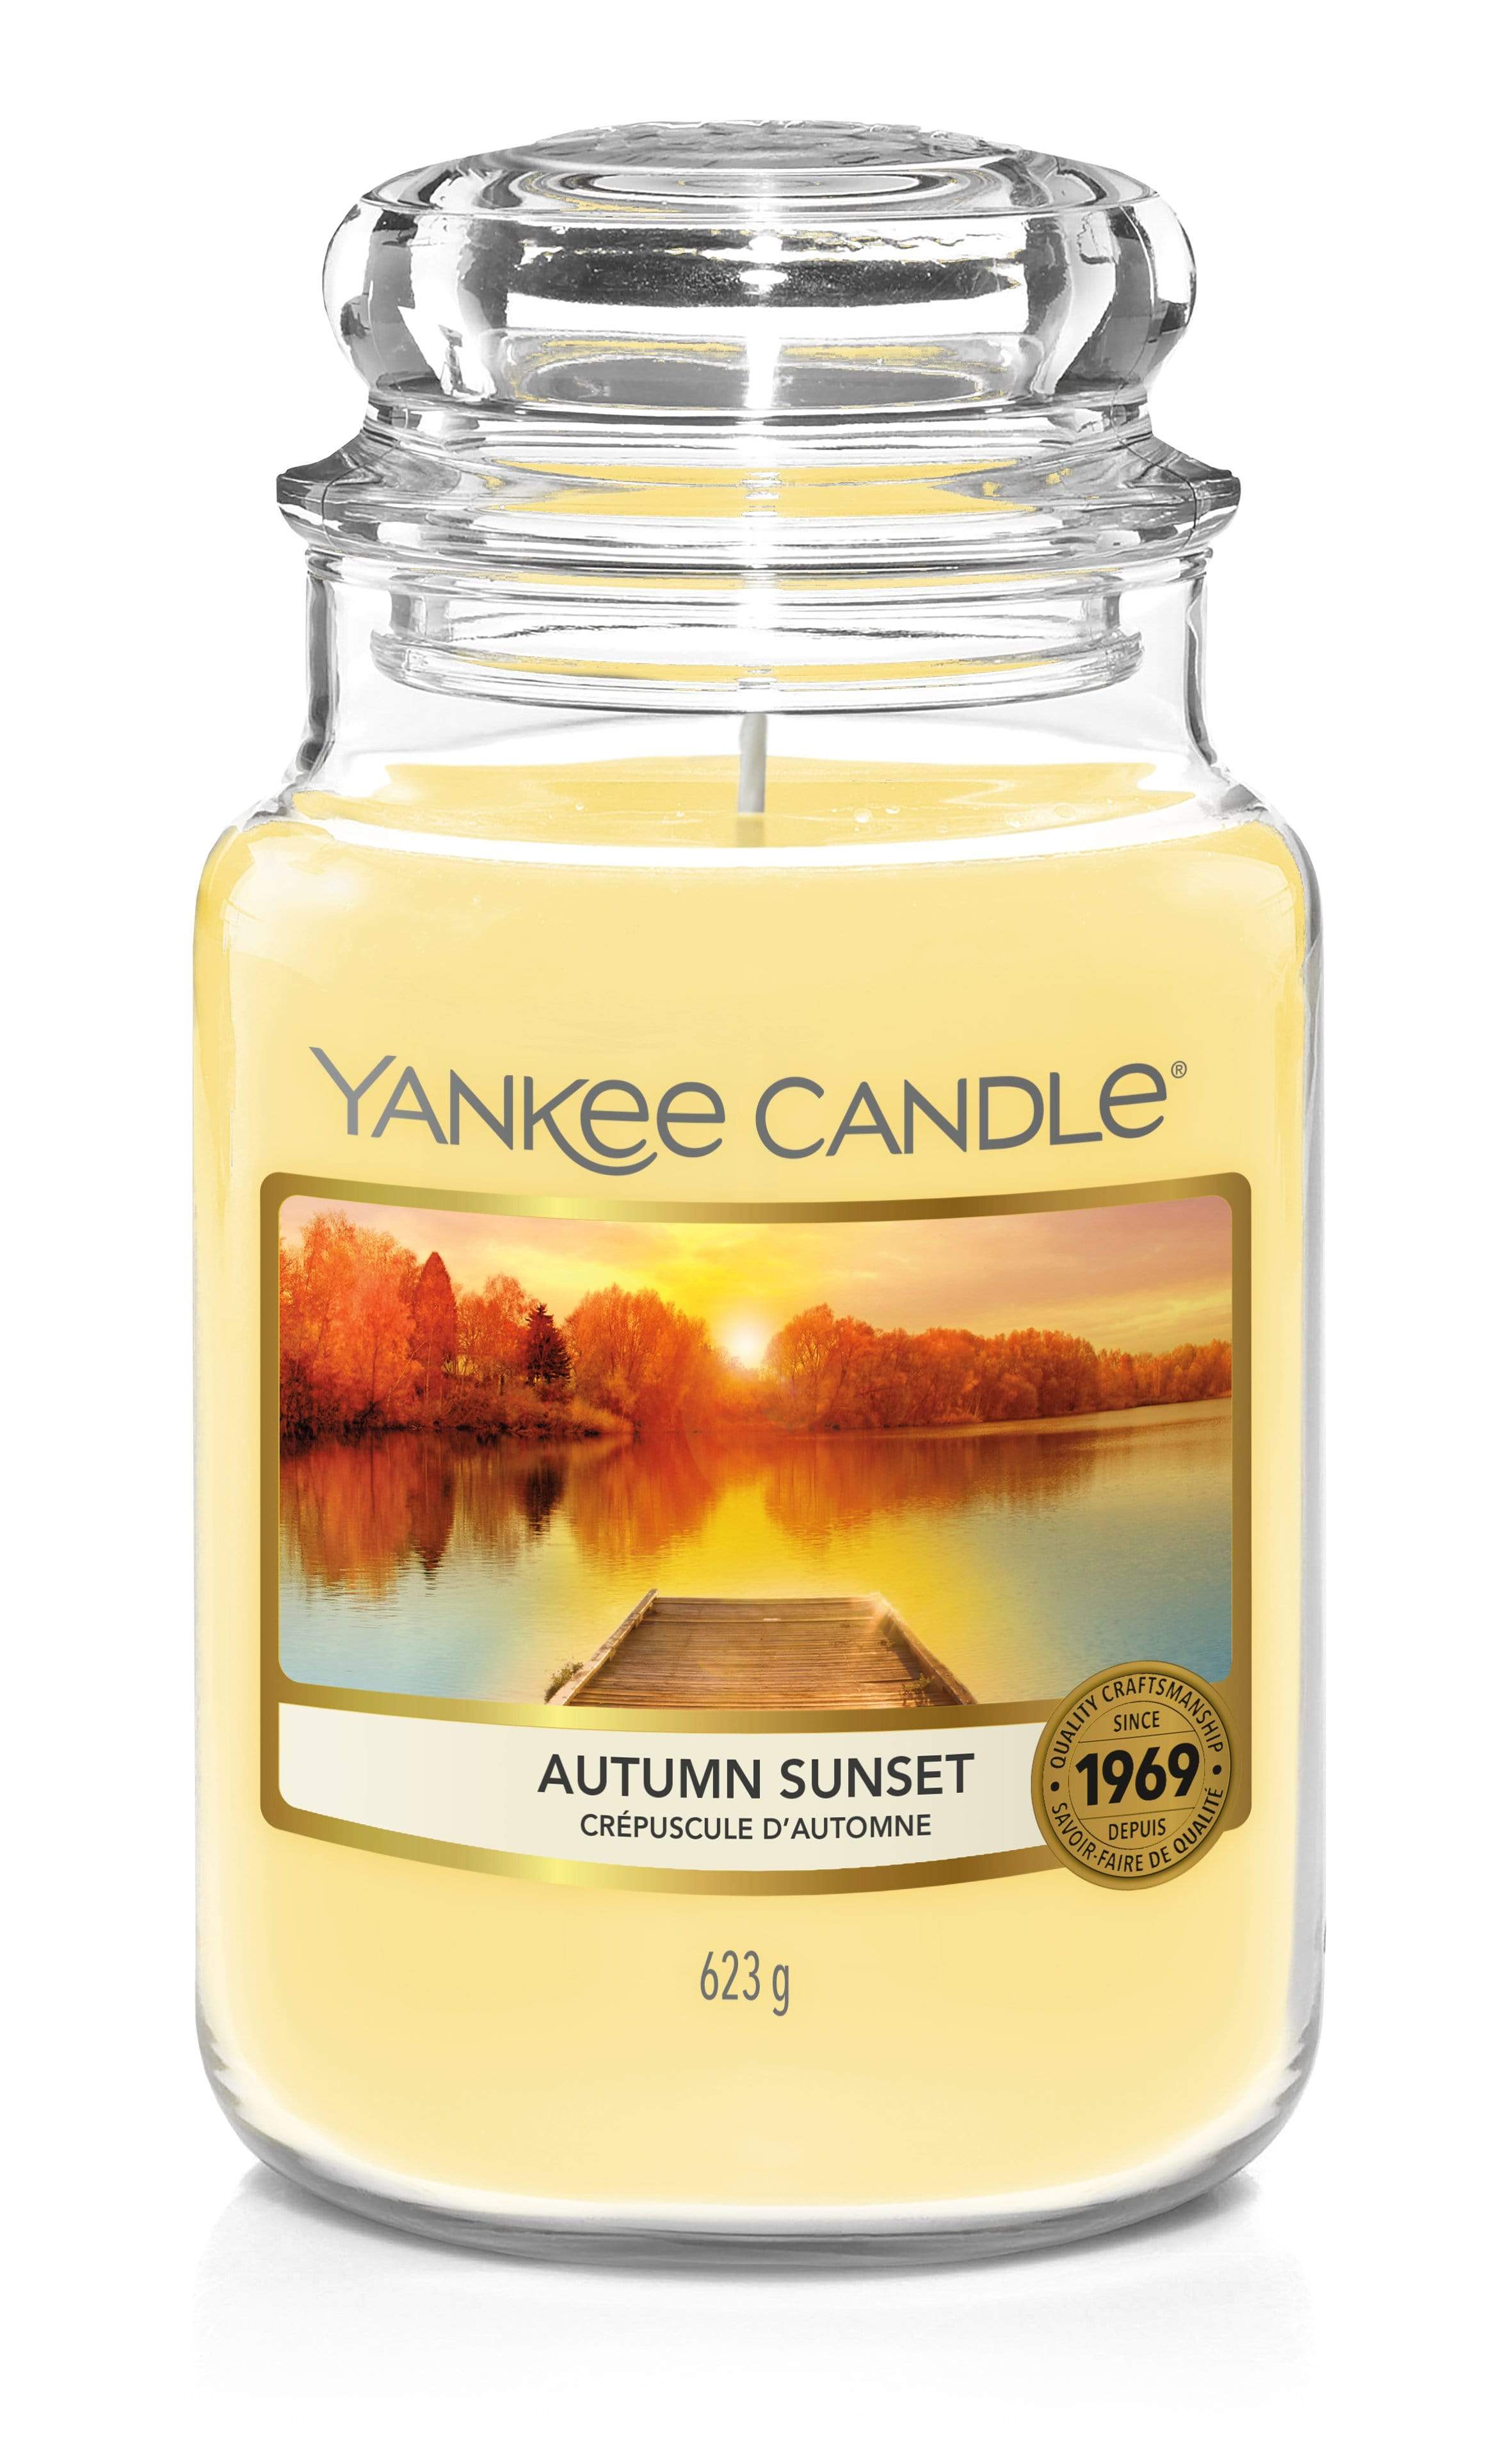 Yankee Candle Large Jar Candle Yankee Candle Large Jar - Autumn Sunset